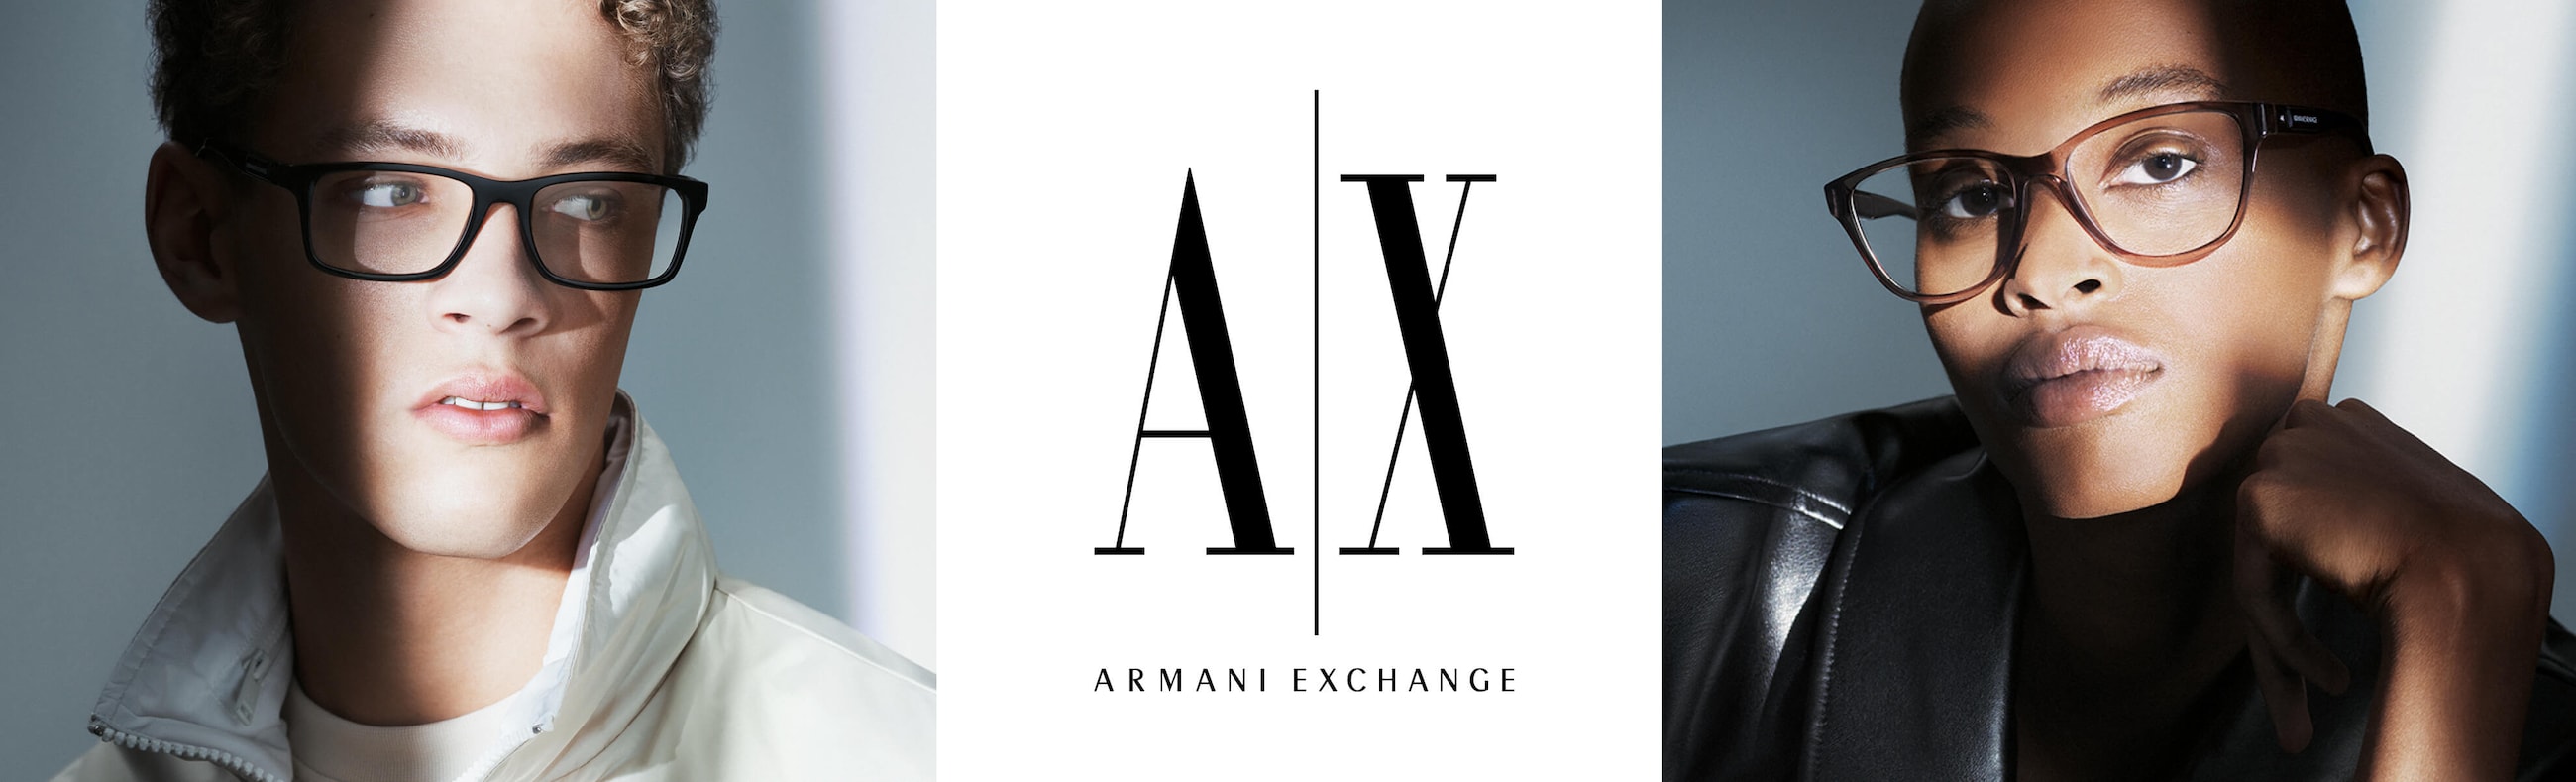 Armani Exchange image